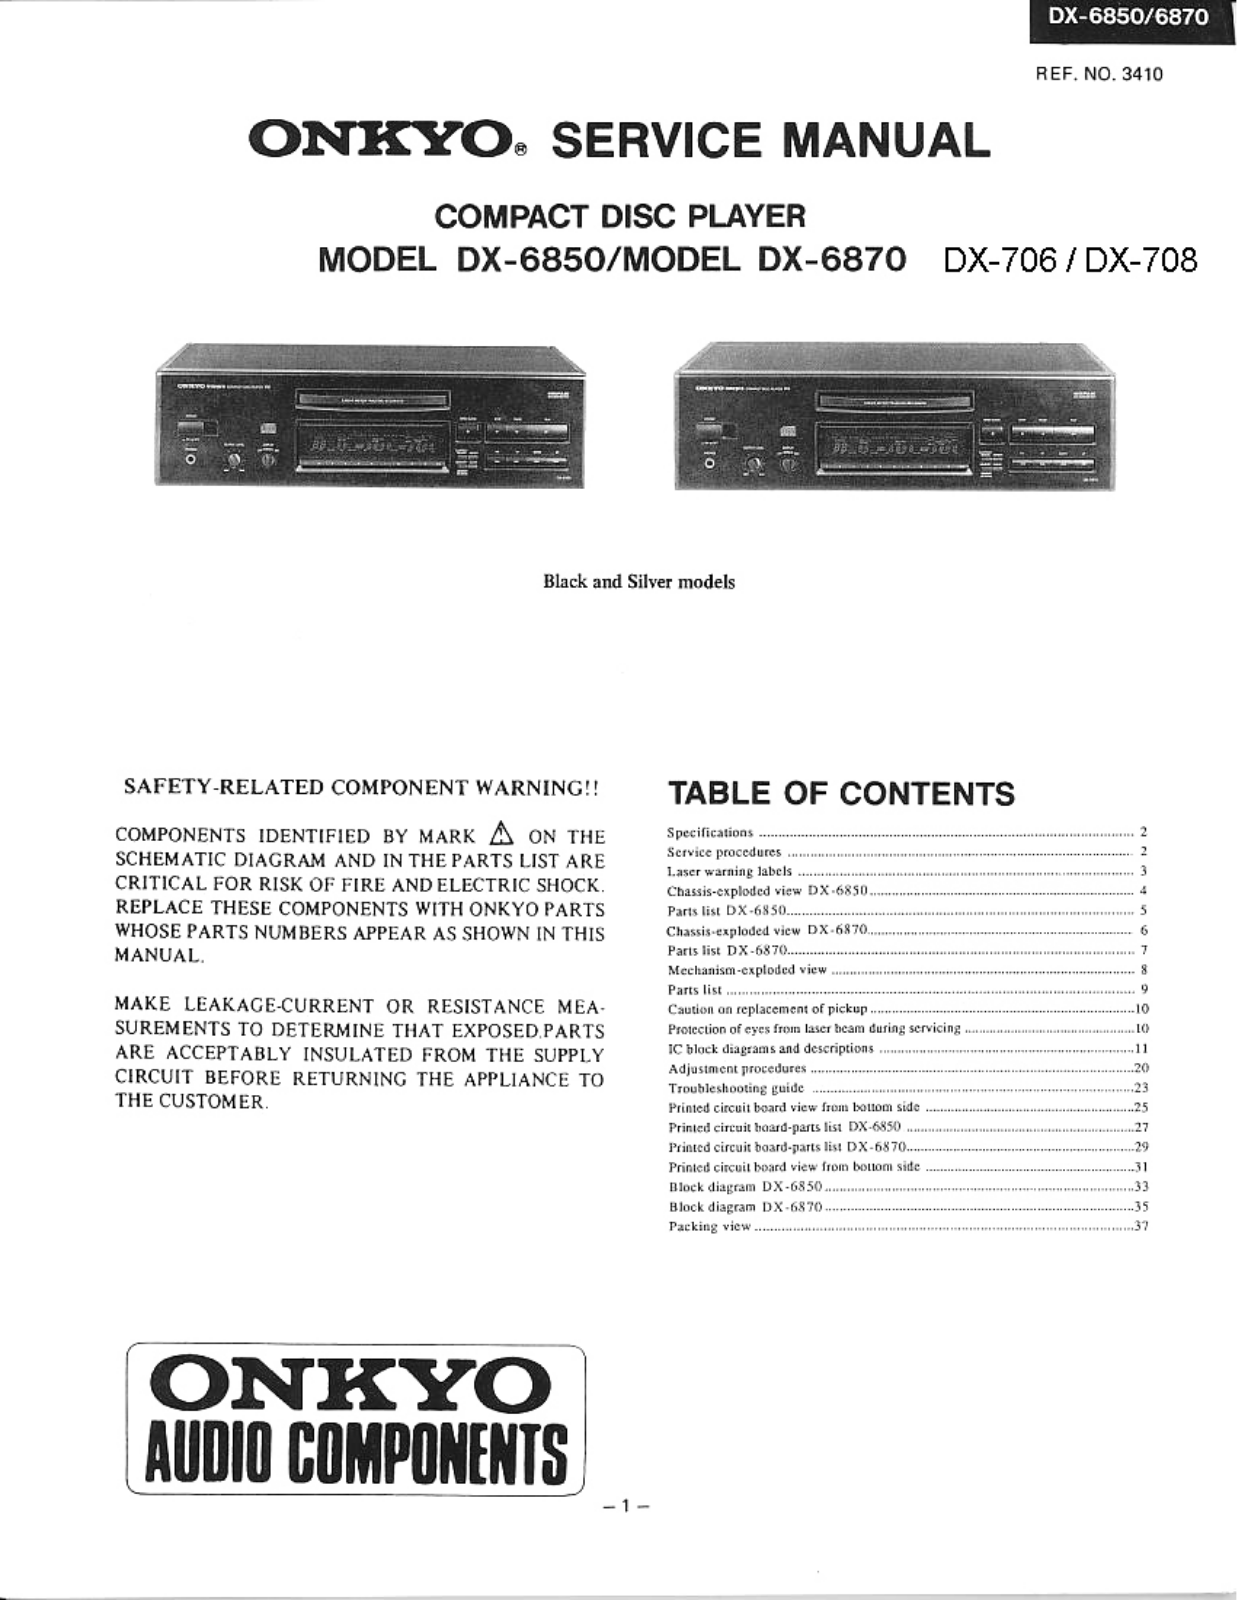 Onkyo DX-6870, DX-6850 Service Manual